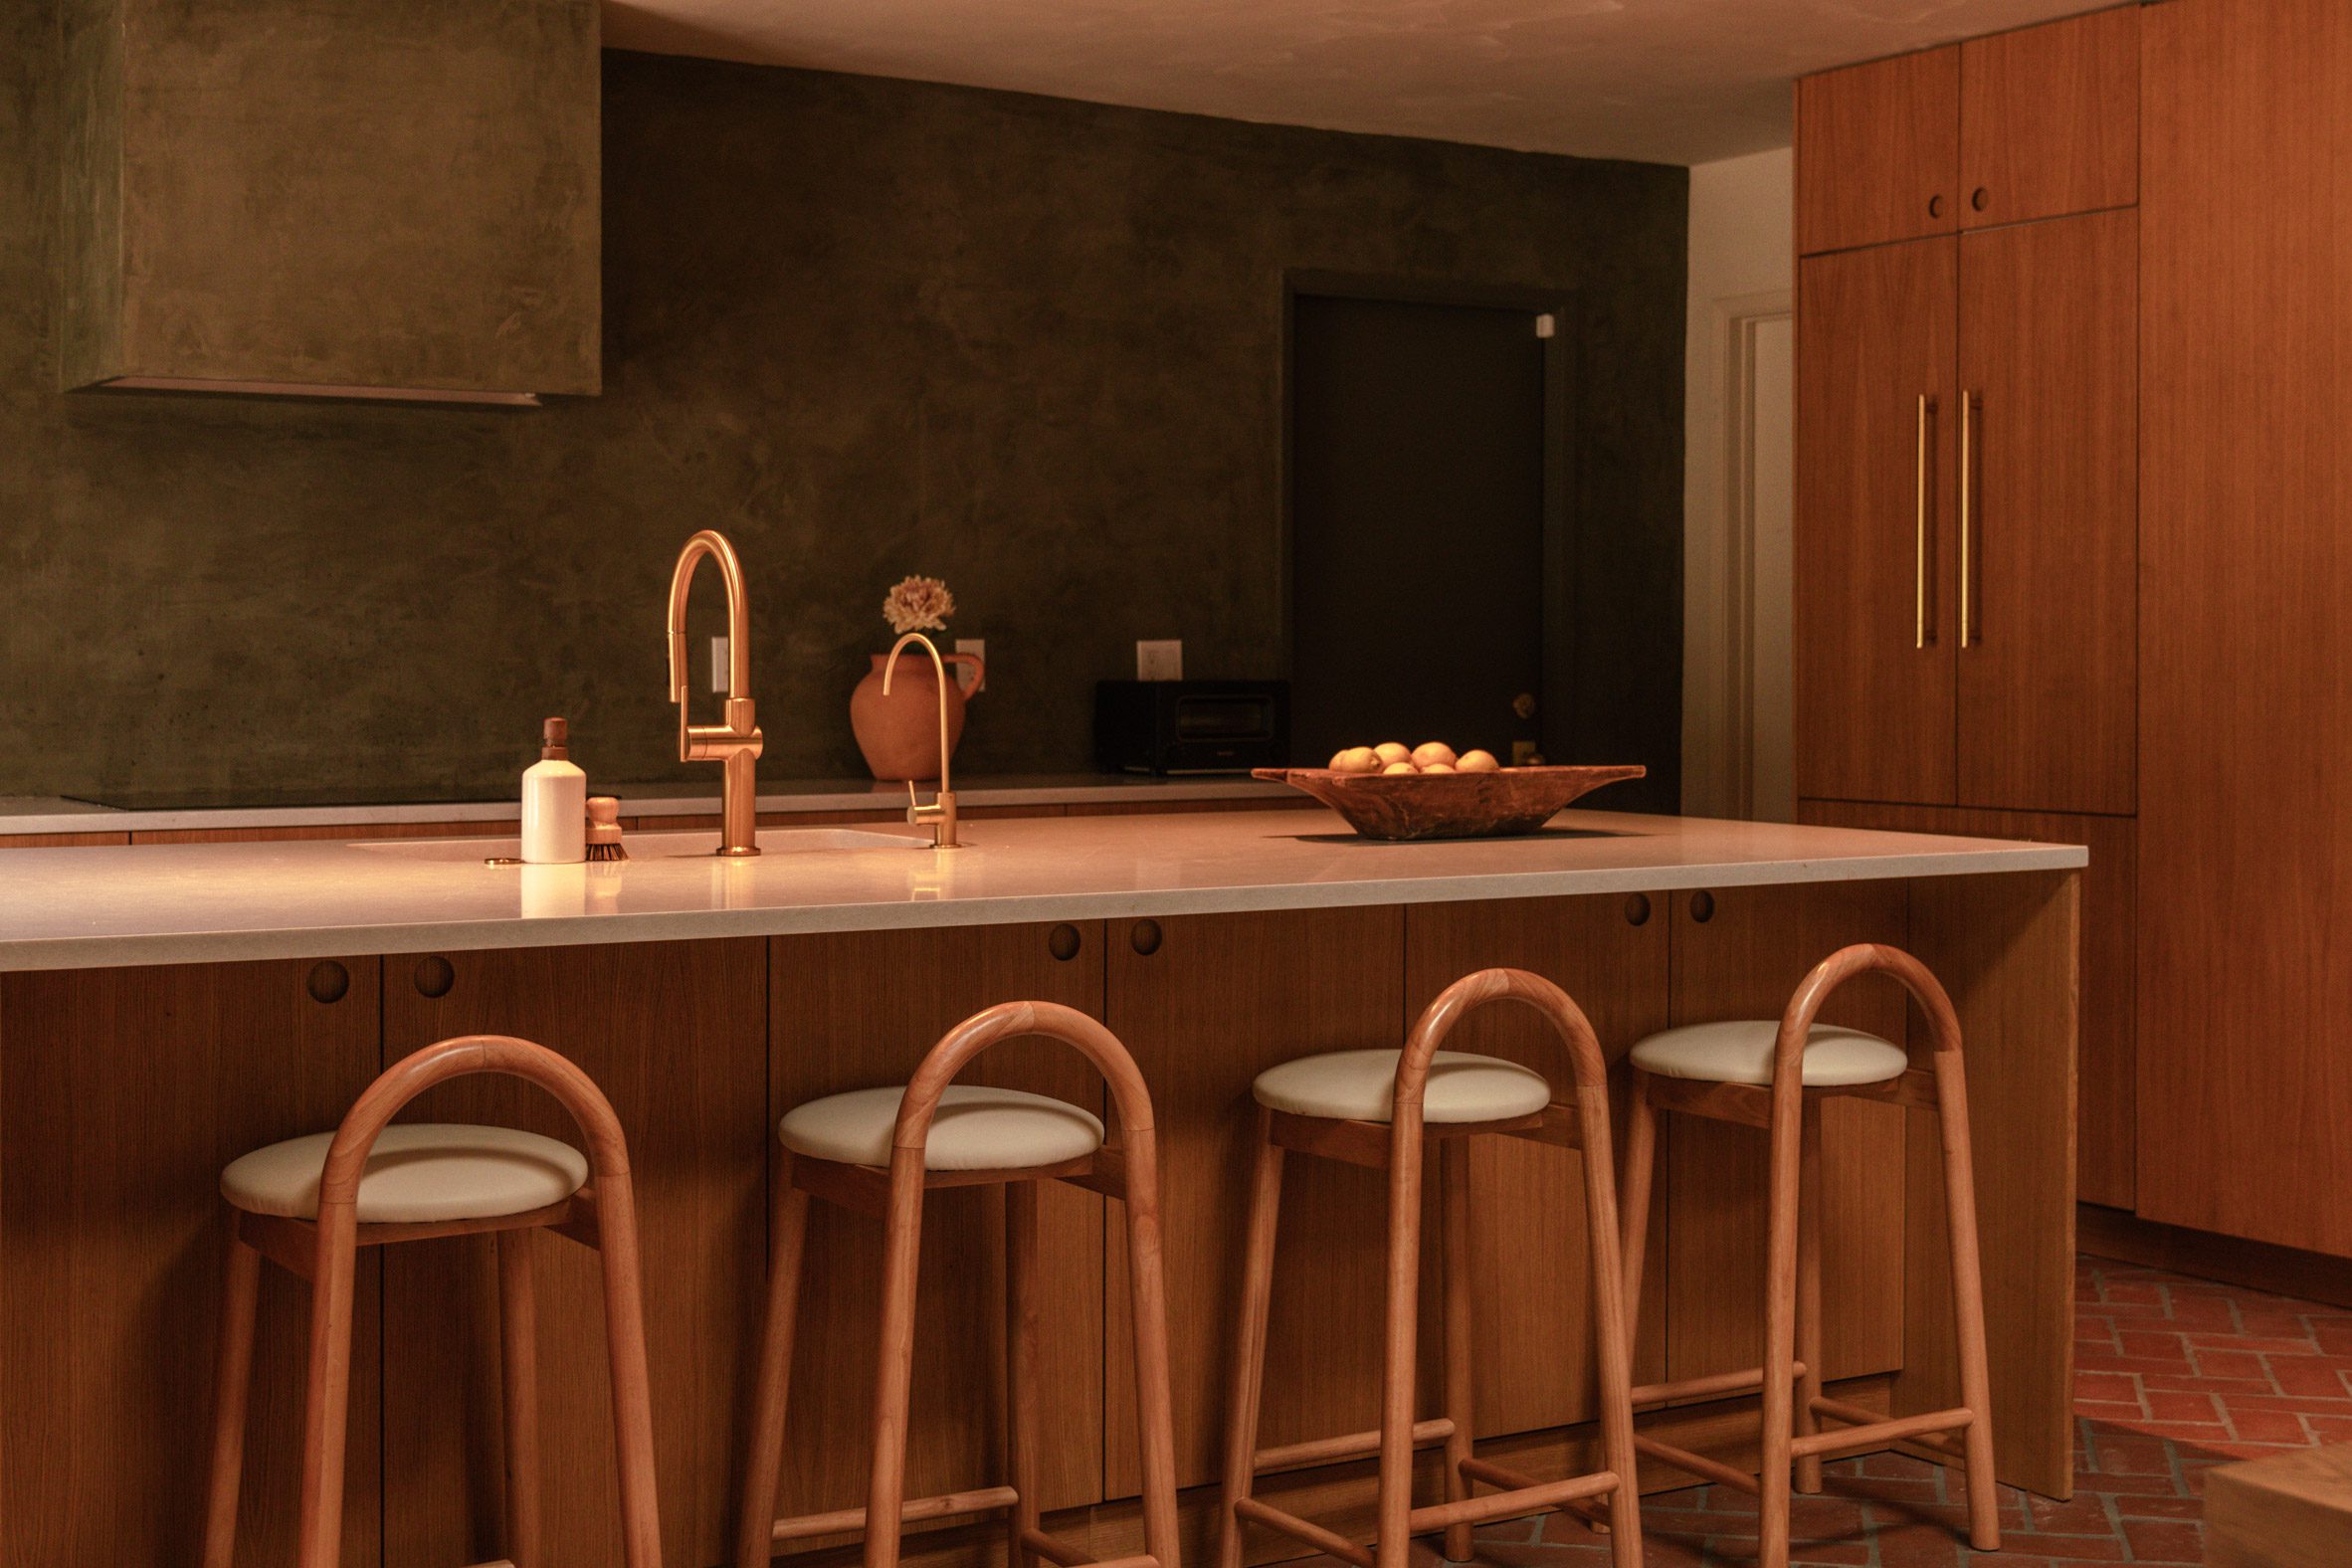 Kitchen with dark green plaster walls and warm millwork